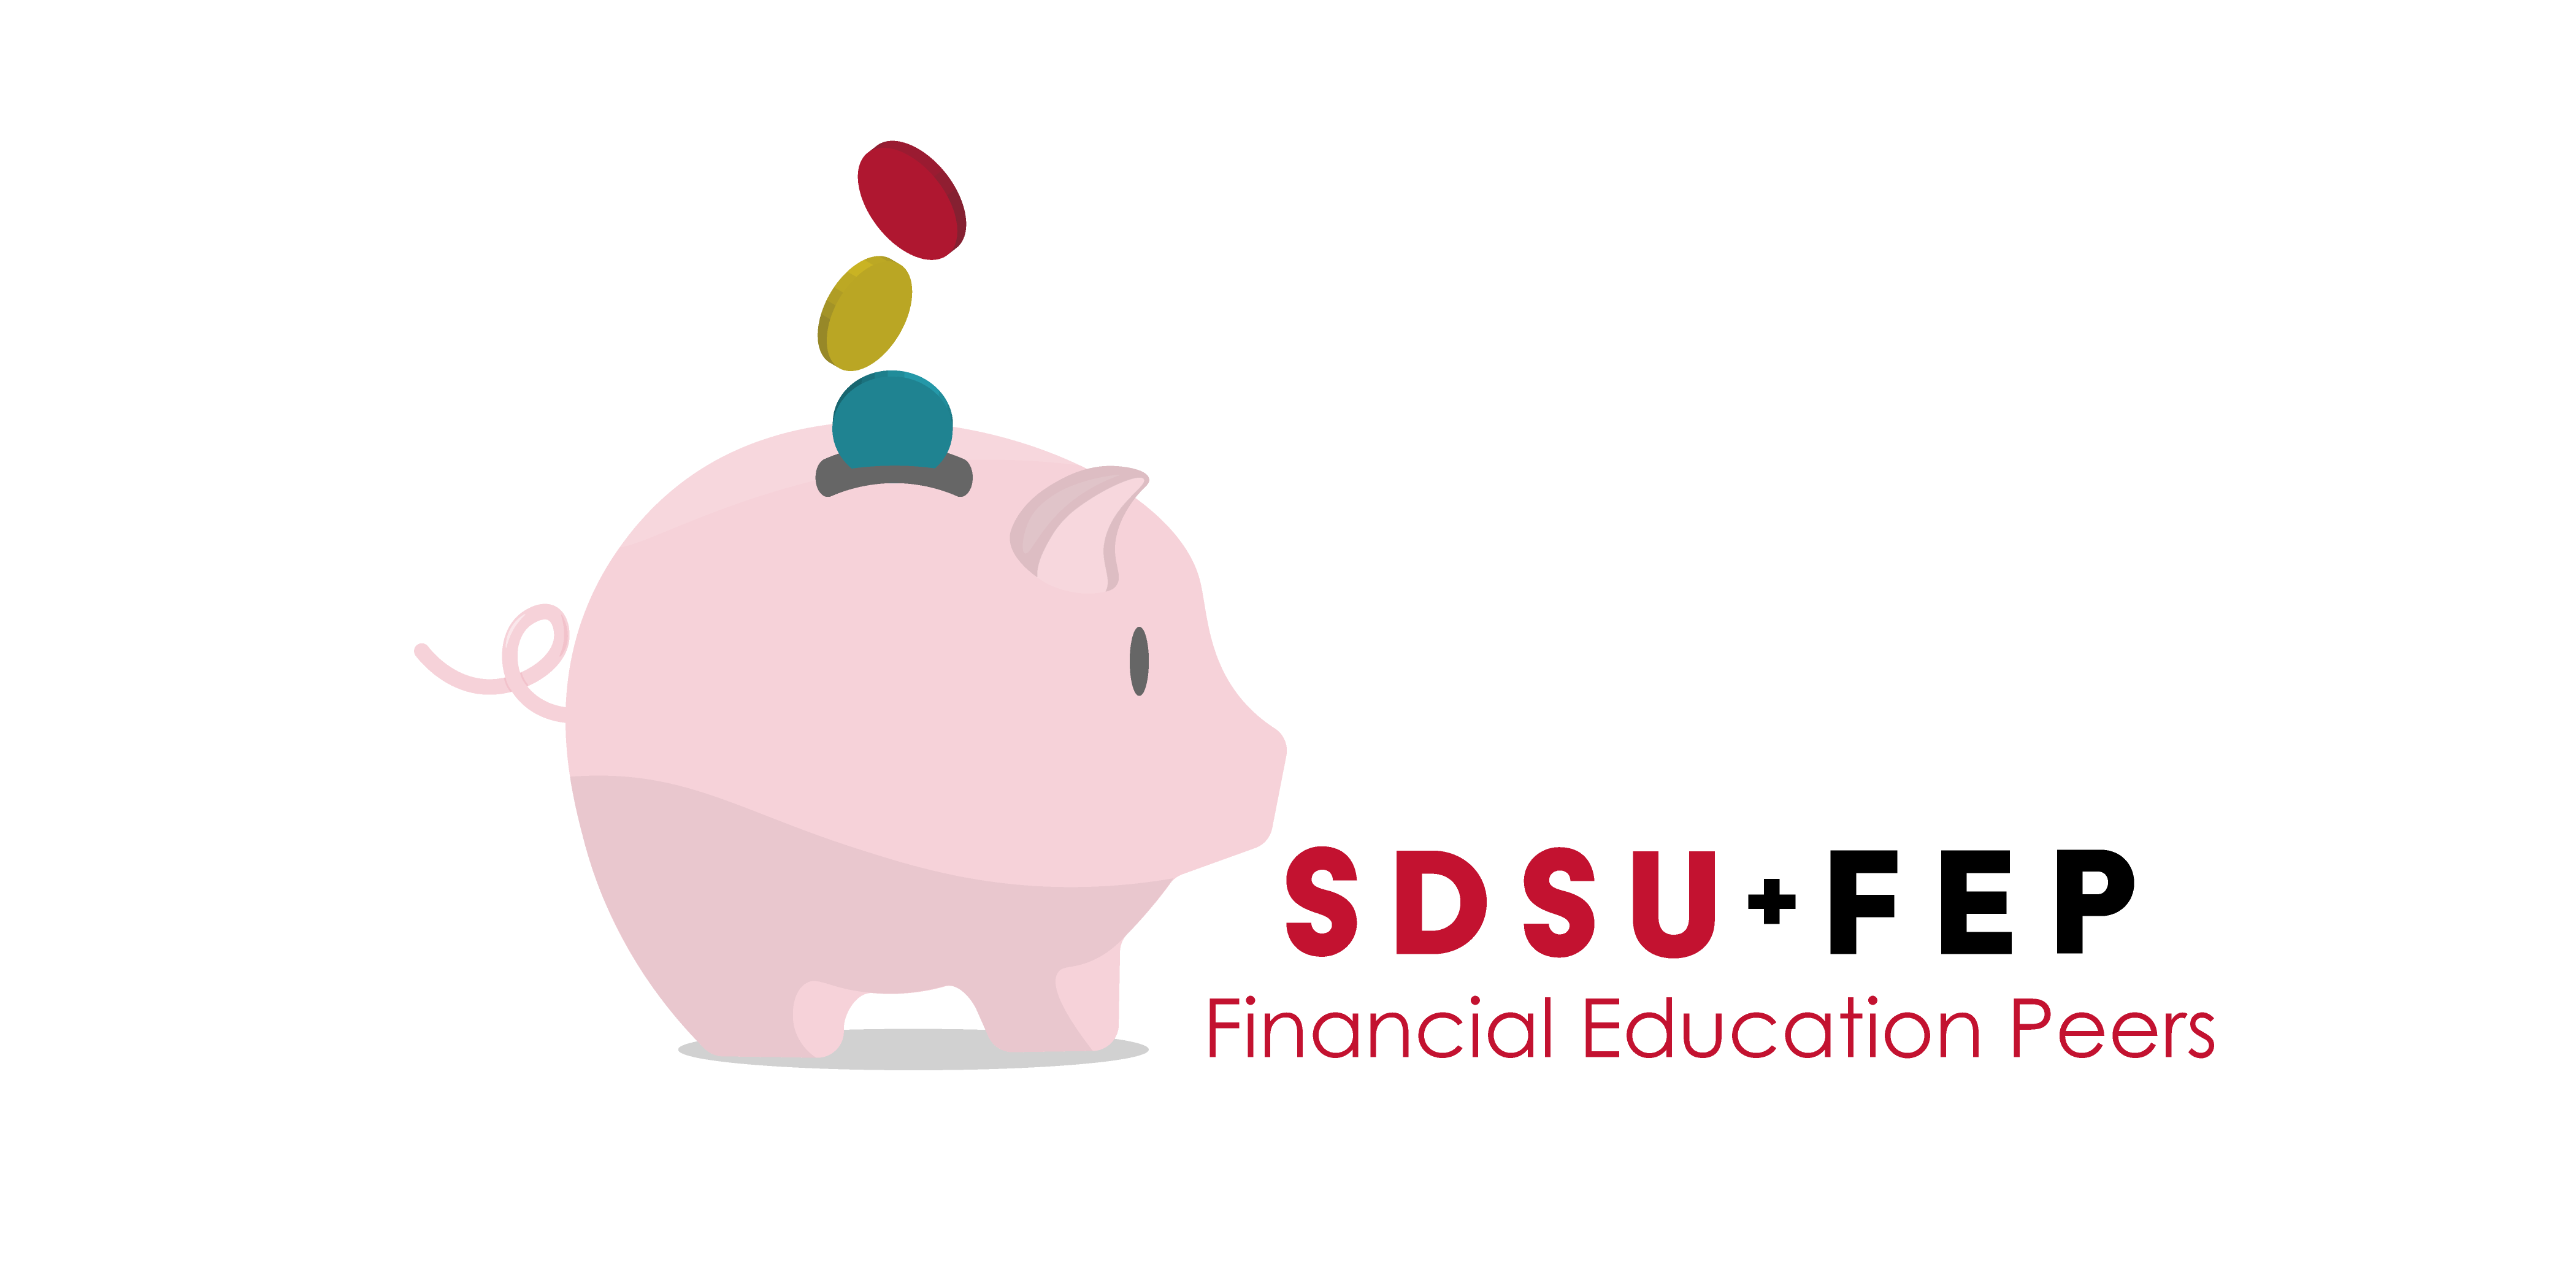 FEP+SDSU piggy bank logo